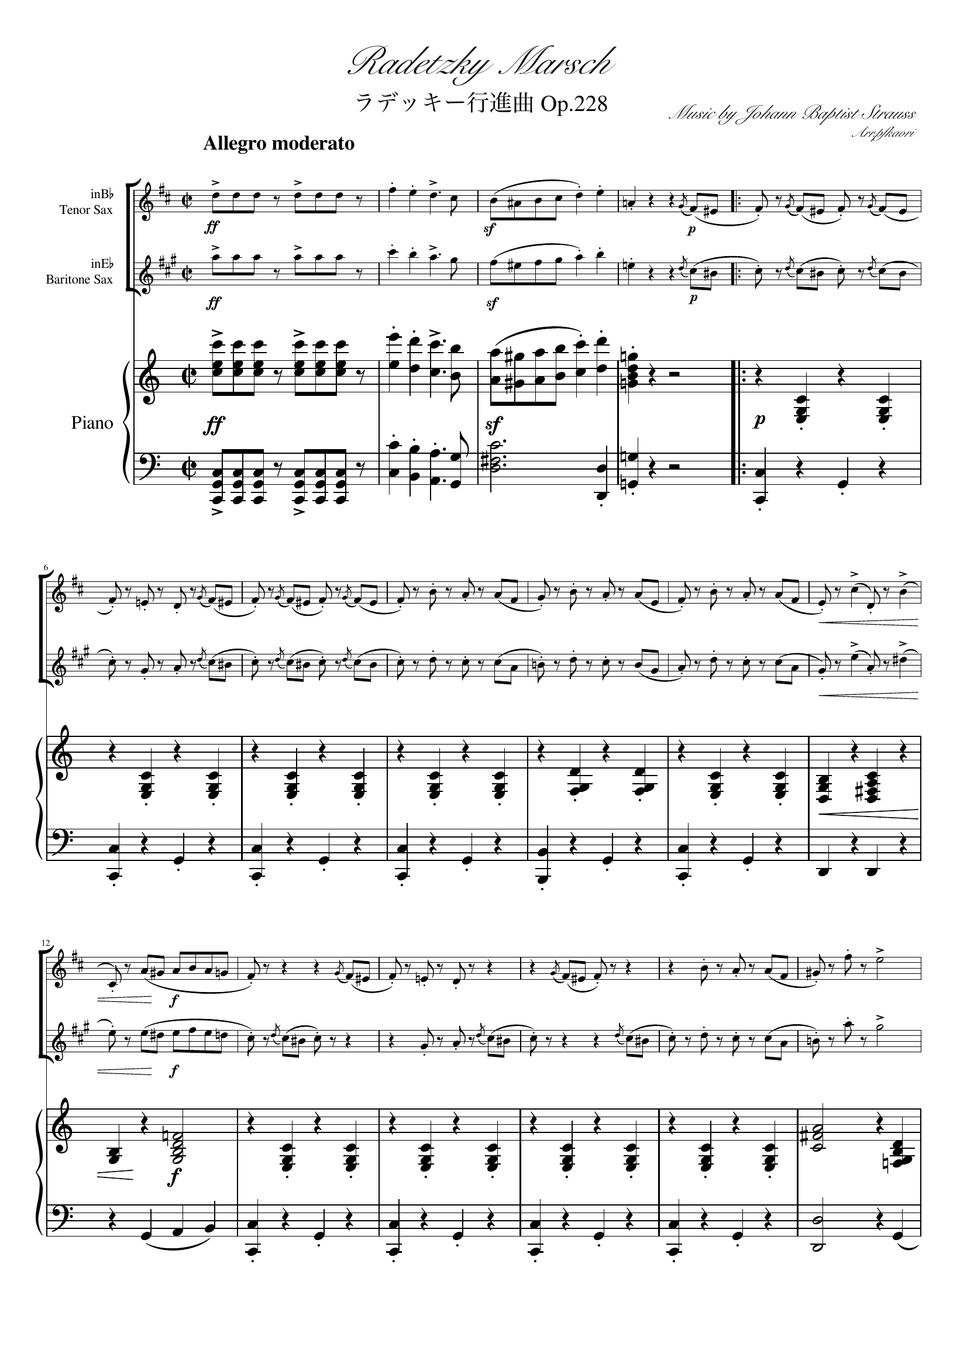 ヨハンシュトラウス1世 - ラデッキー行進曲 (C・ピアノトリオ/テナーサックス&バリトンサックス) by pfkaori